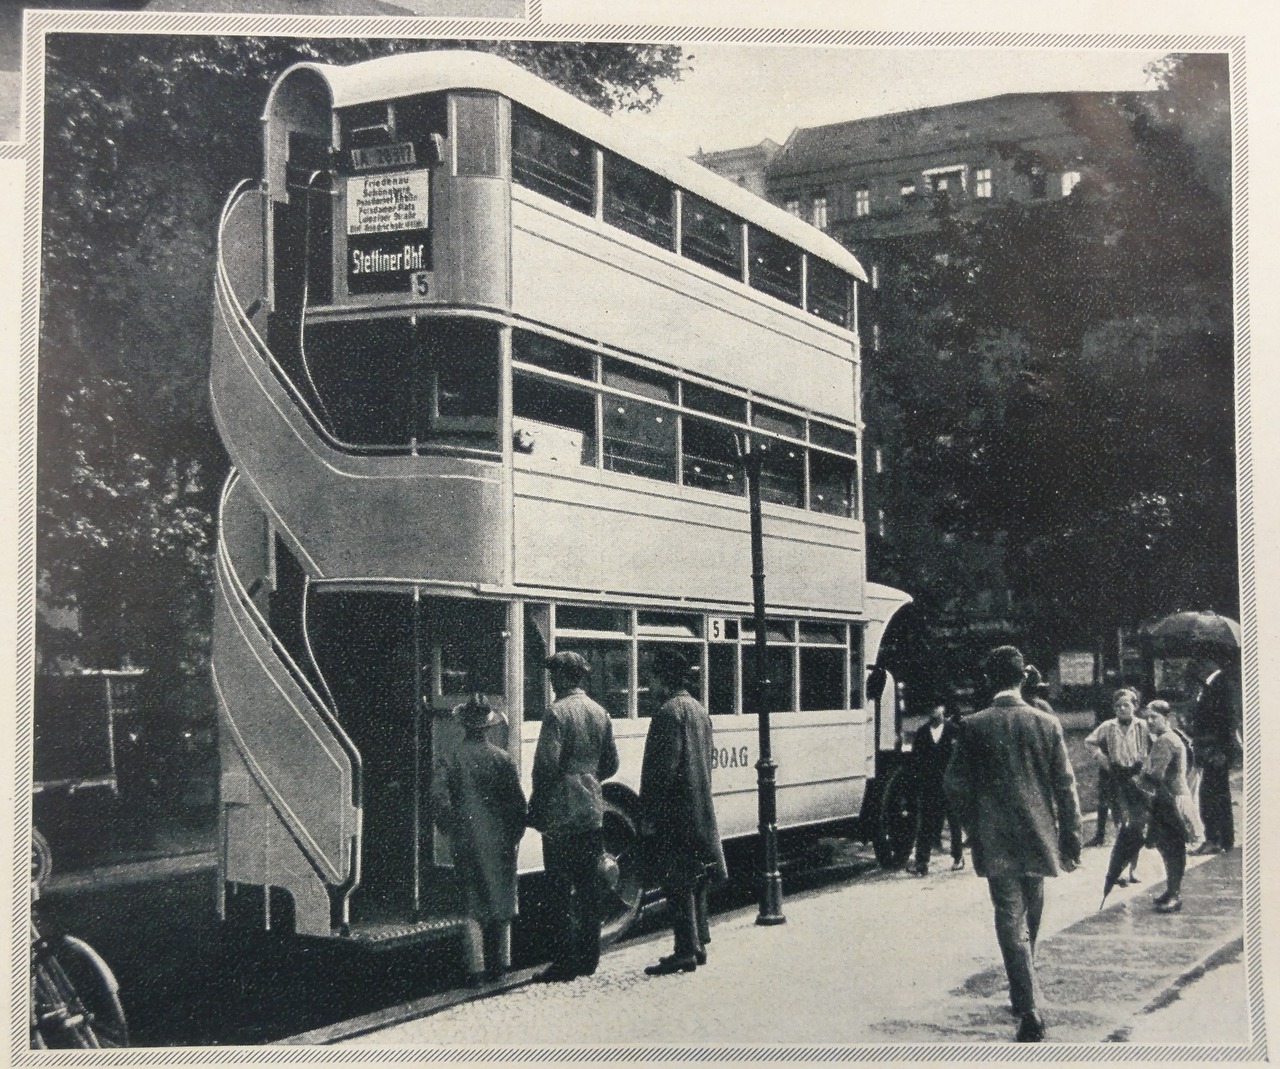 Triple decker bus in Berlin, Germany, 1926.